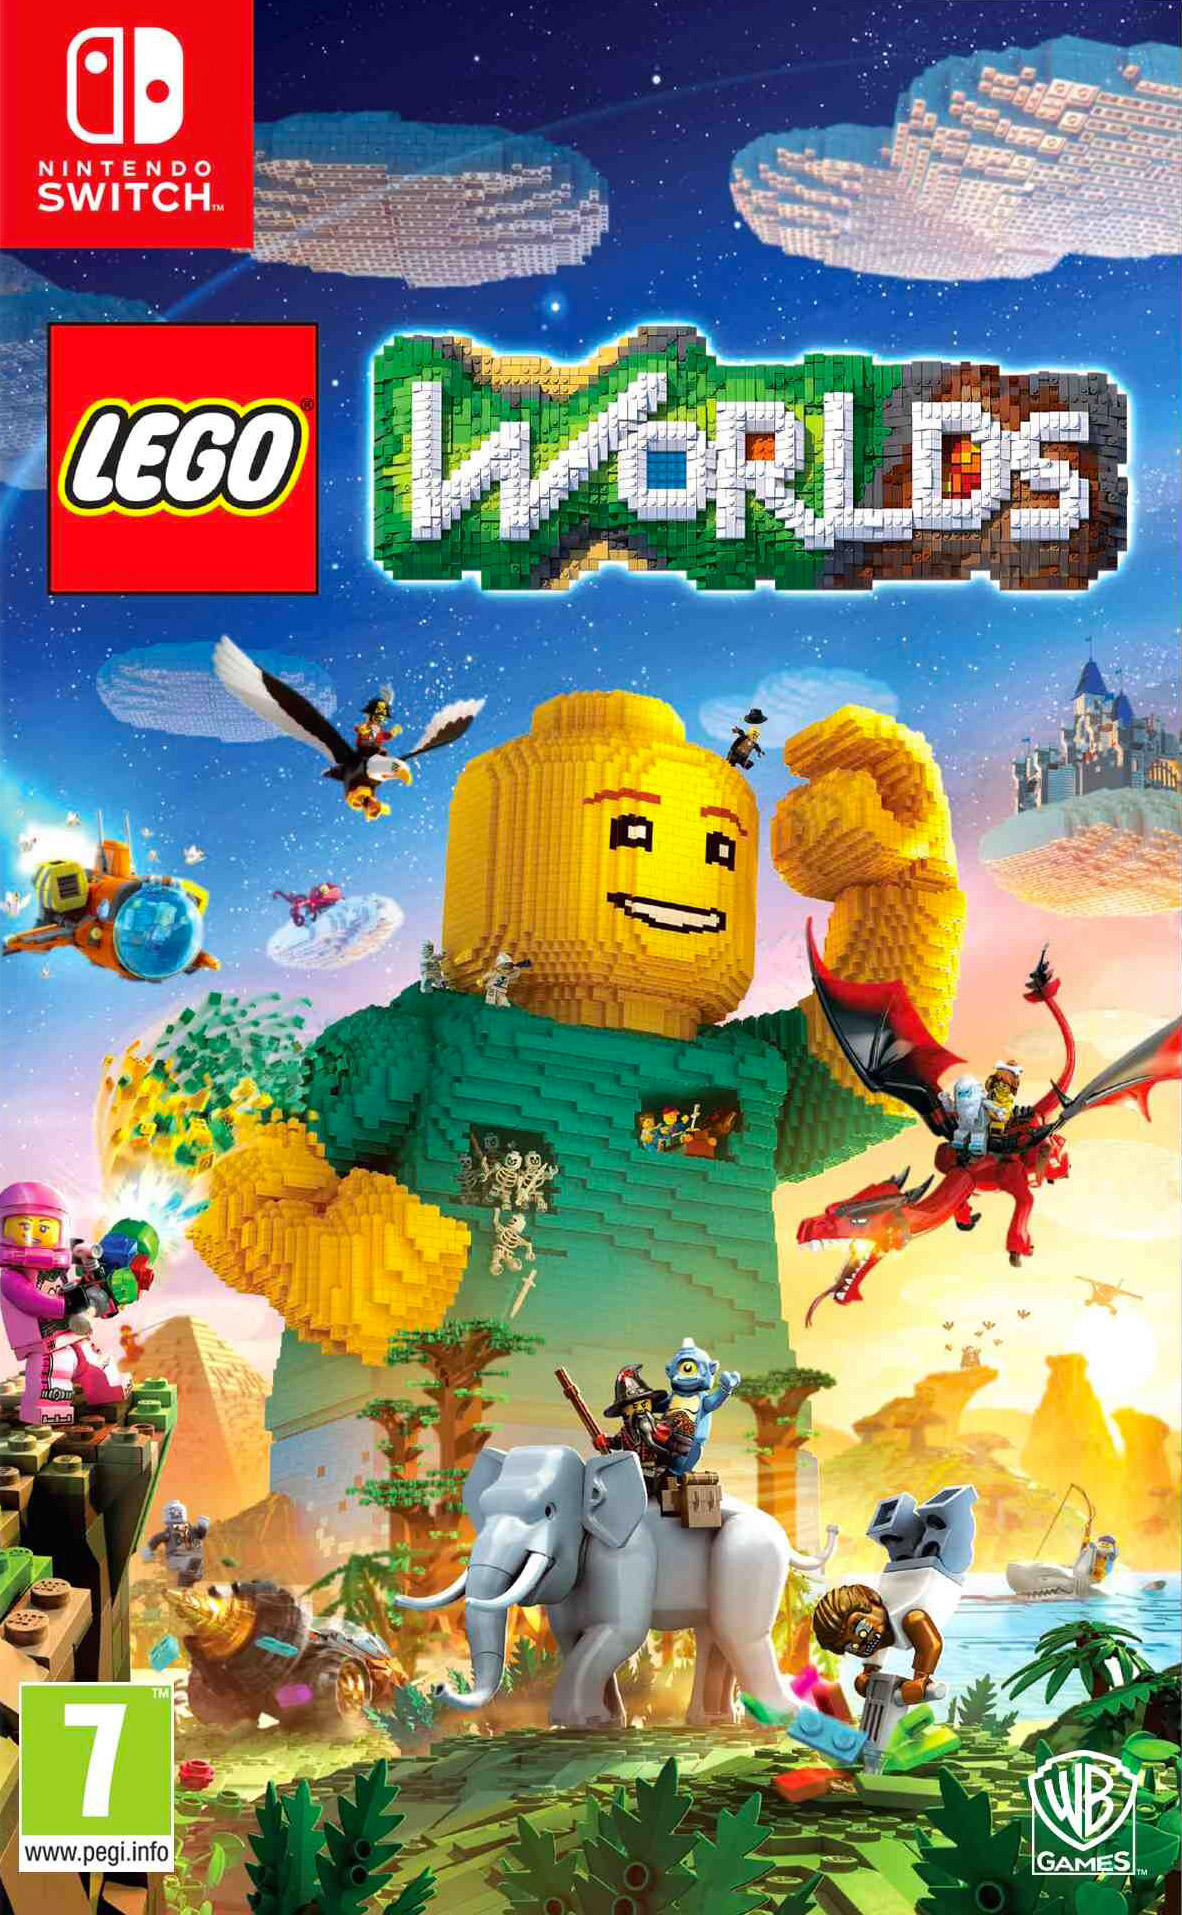 LEGO Jeux vidéo SWITCHLW pas cher, LEGO Worlds Nintendo Switch